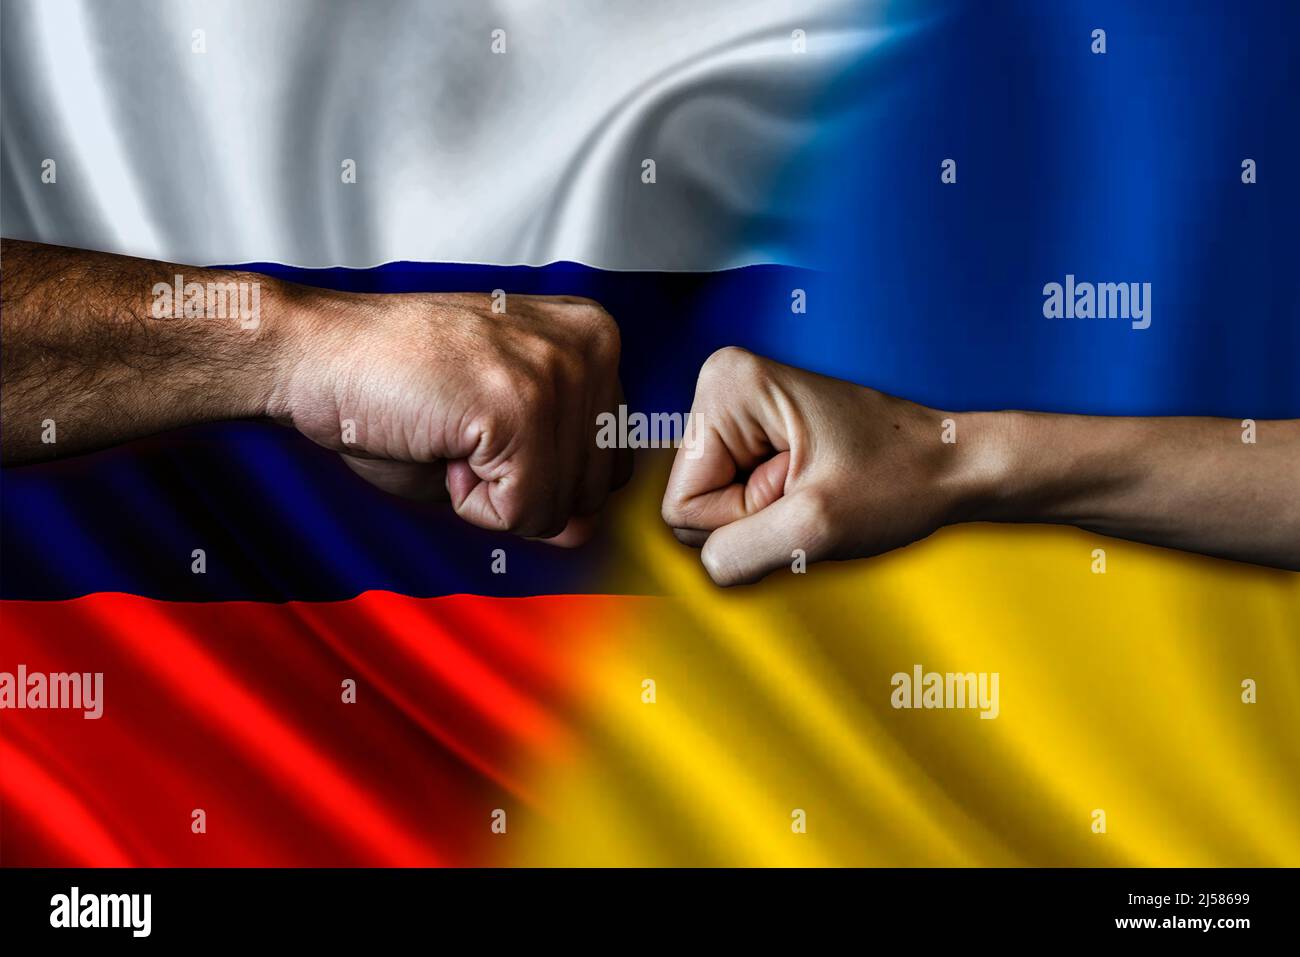 Russia vs Ukraine two fists bumping, Russia vs Ukraine political conflict, Russia vs Ukraine flag, Russia vs Ukraine concept Stock Photo